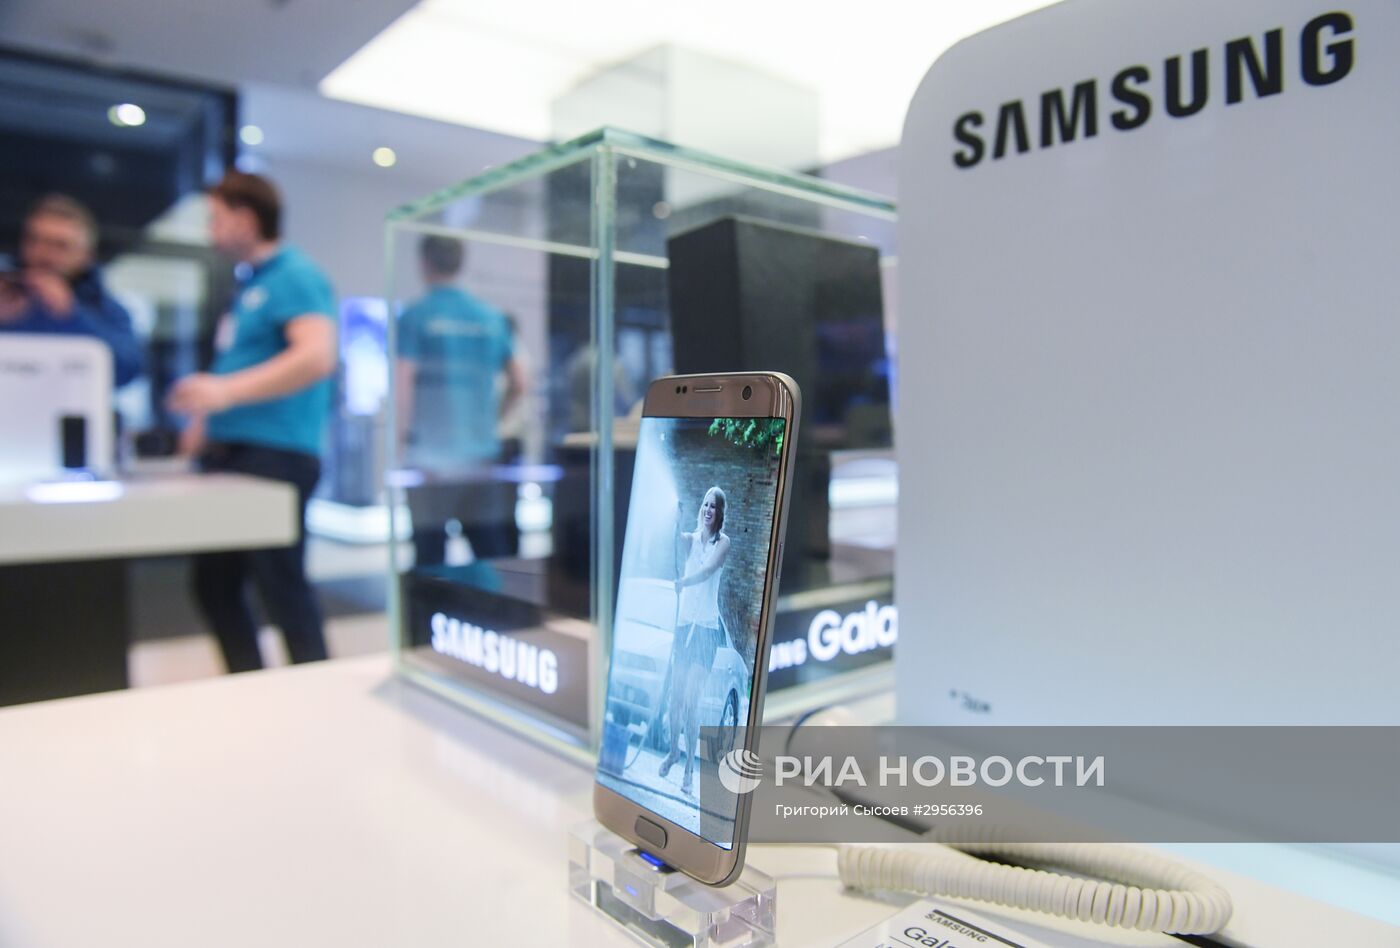 Фирменный магазин Samsung на Тверской улице в Москве